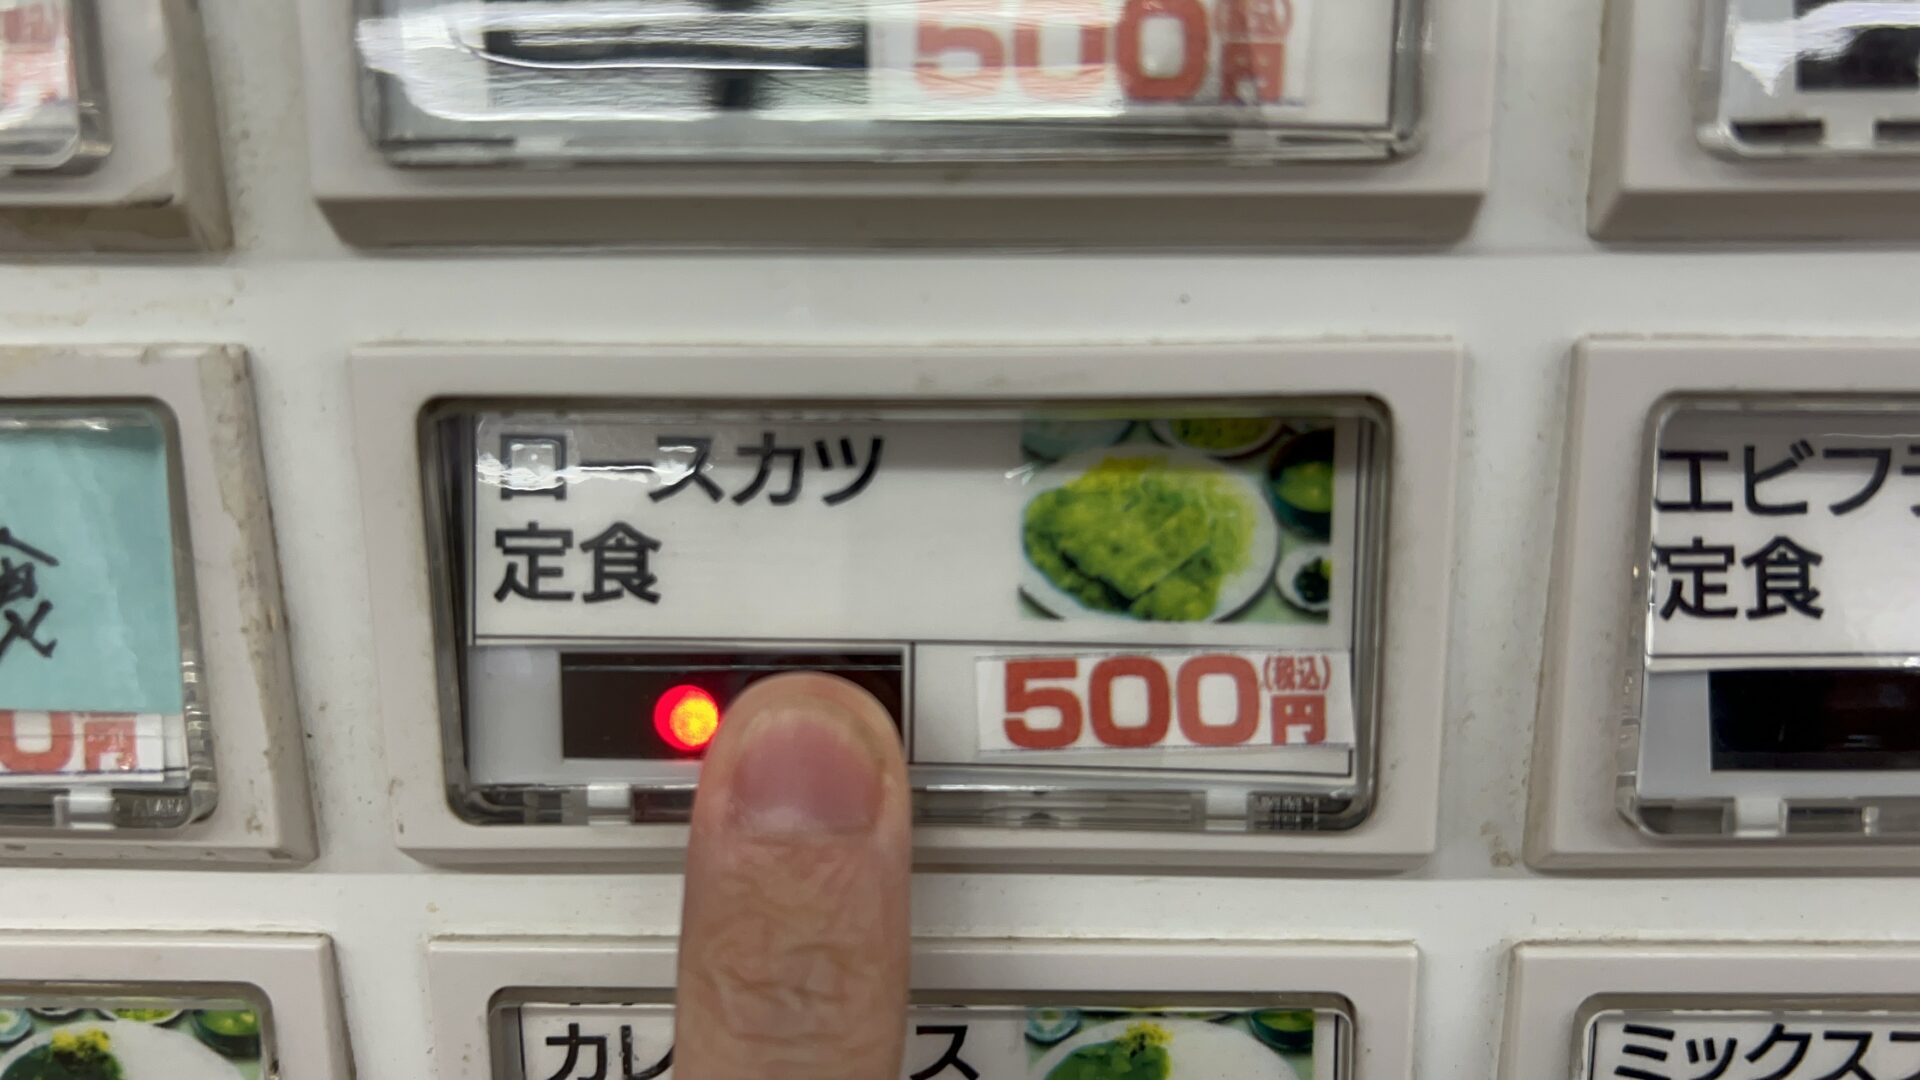 伊勢崎市もつ煮ショップロースカツ定食券売機ボタン